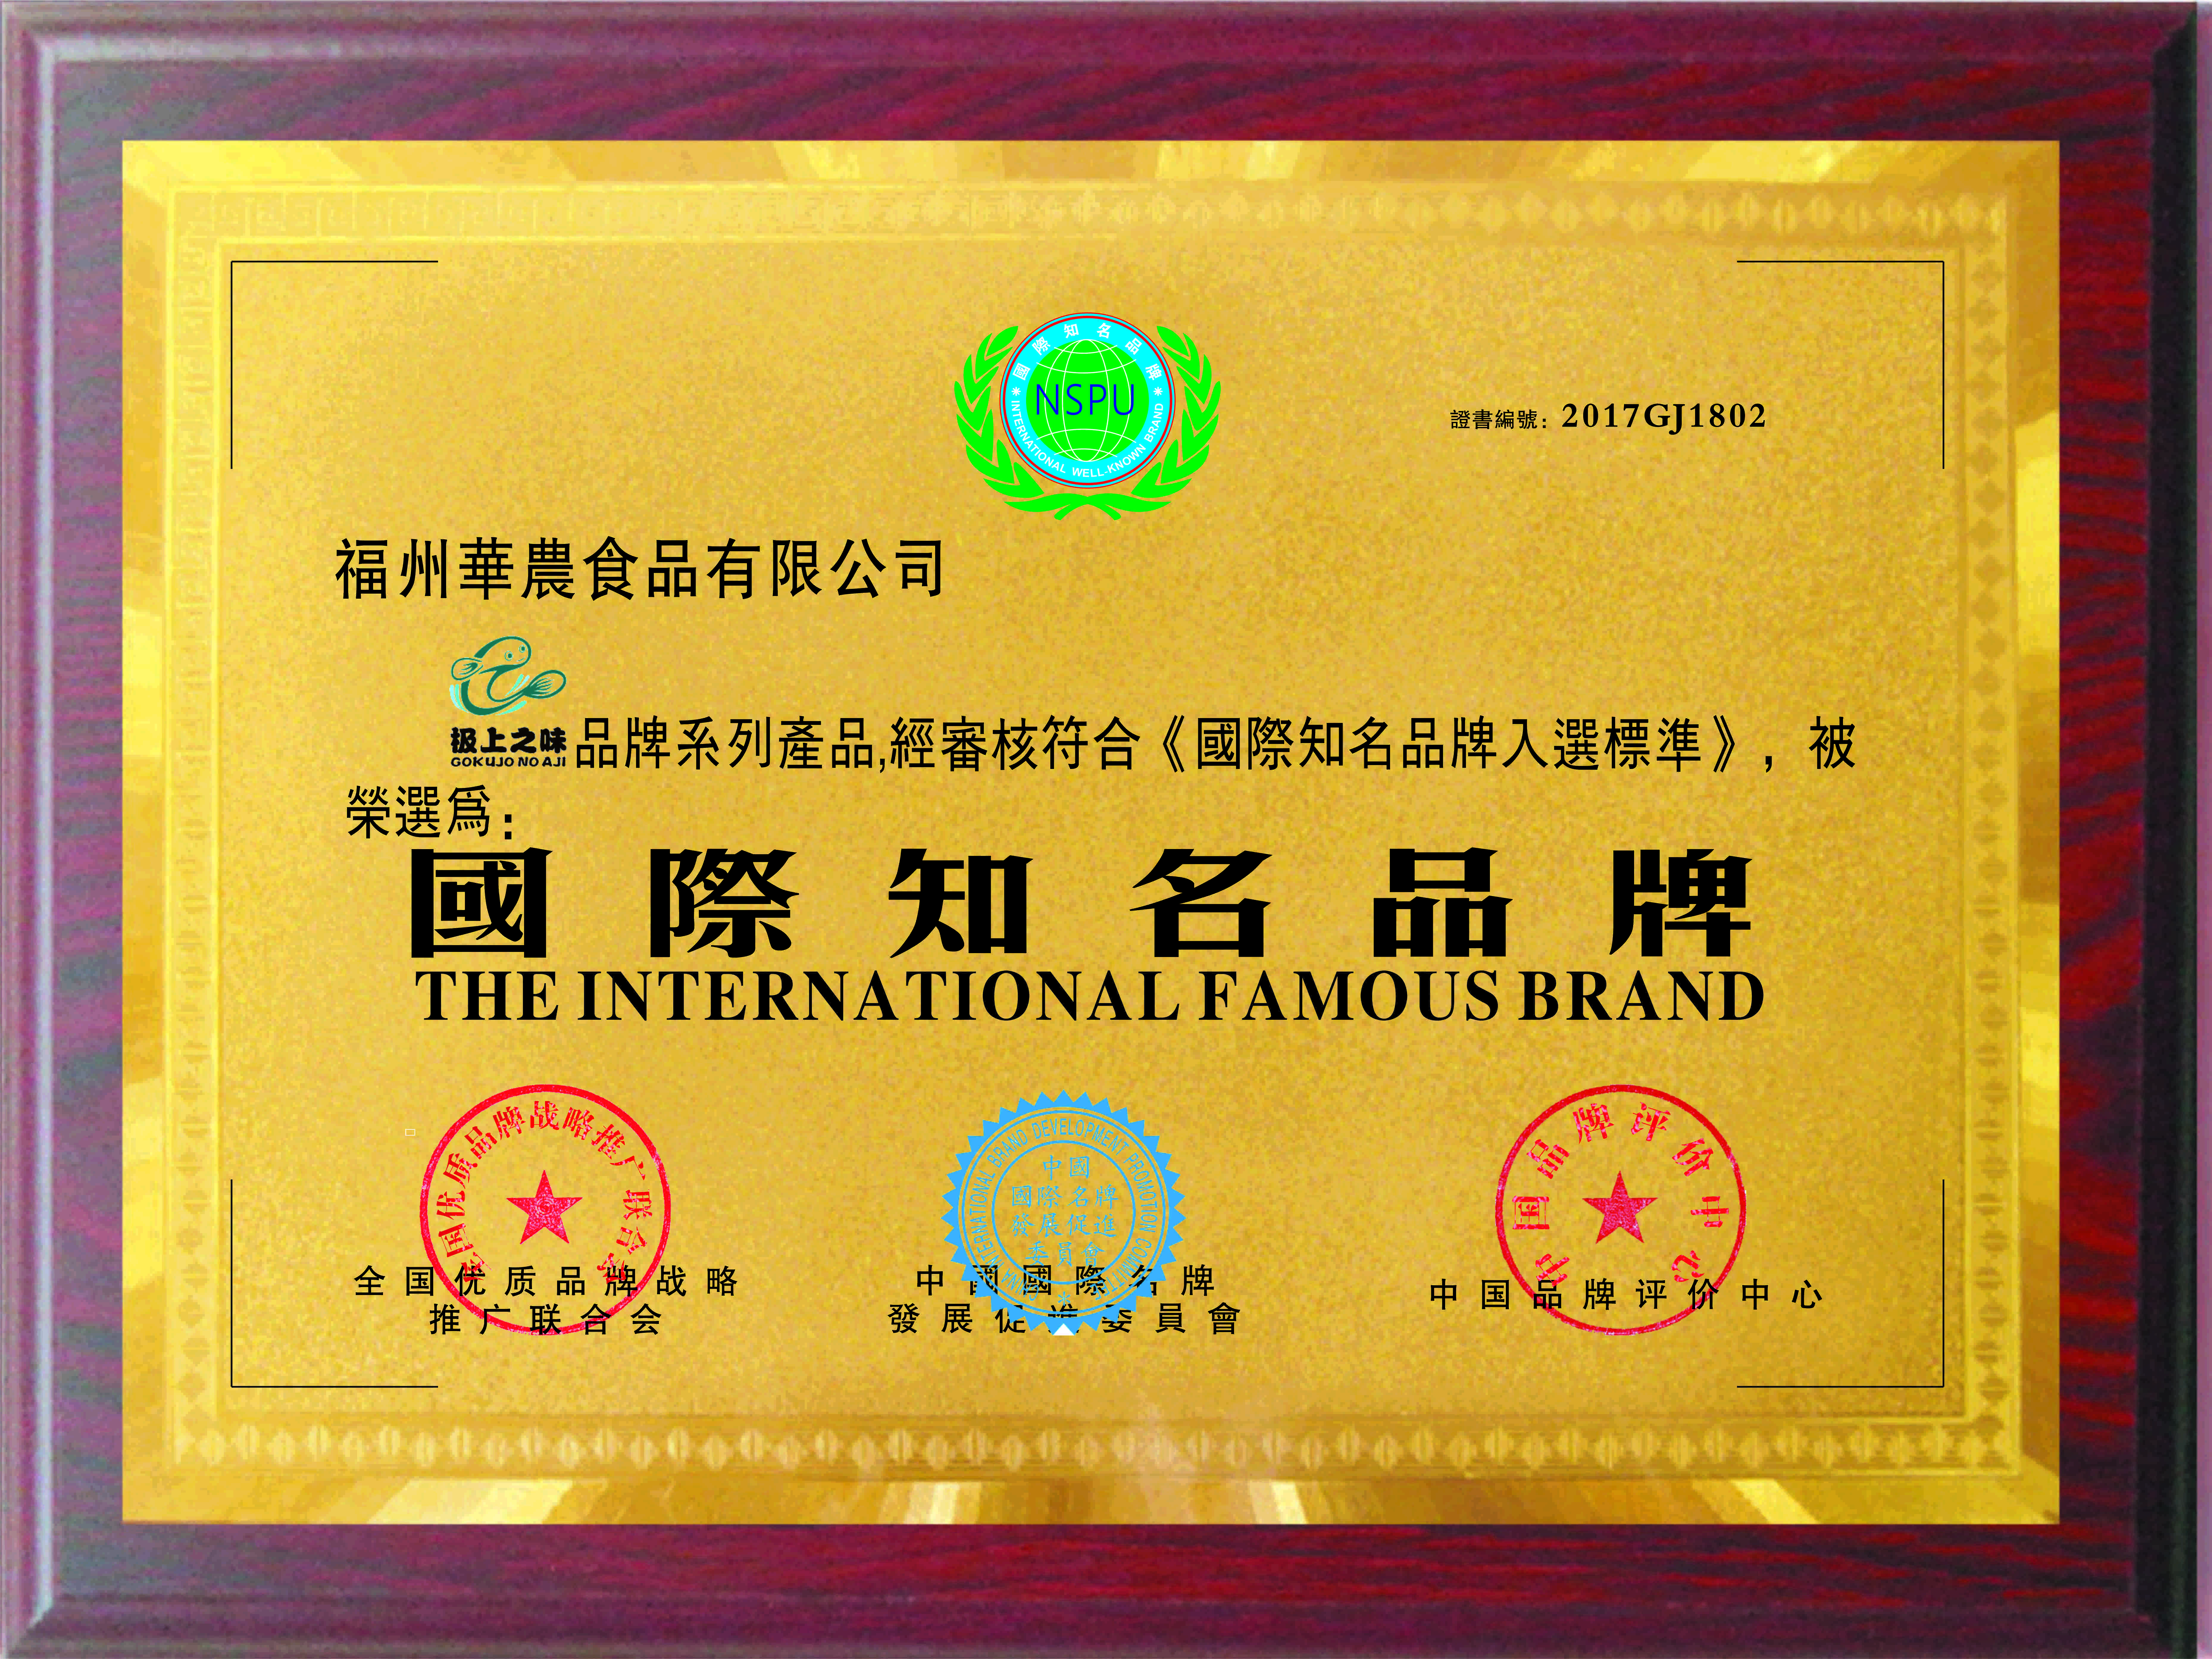 2016年2月“华农食品”被评为国际知名品牌荣誉称号